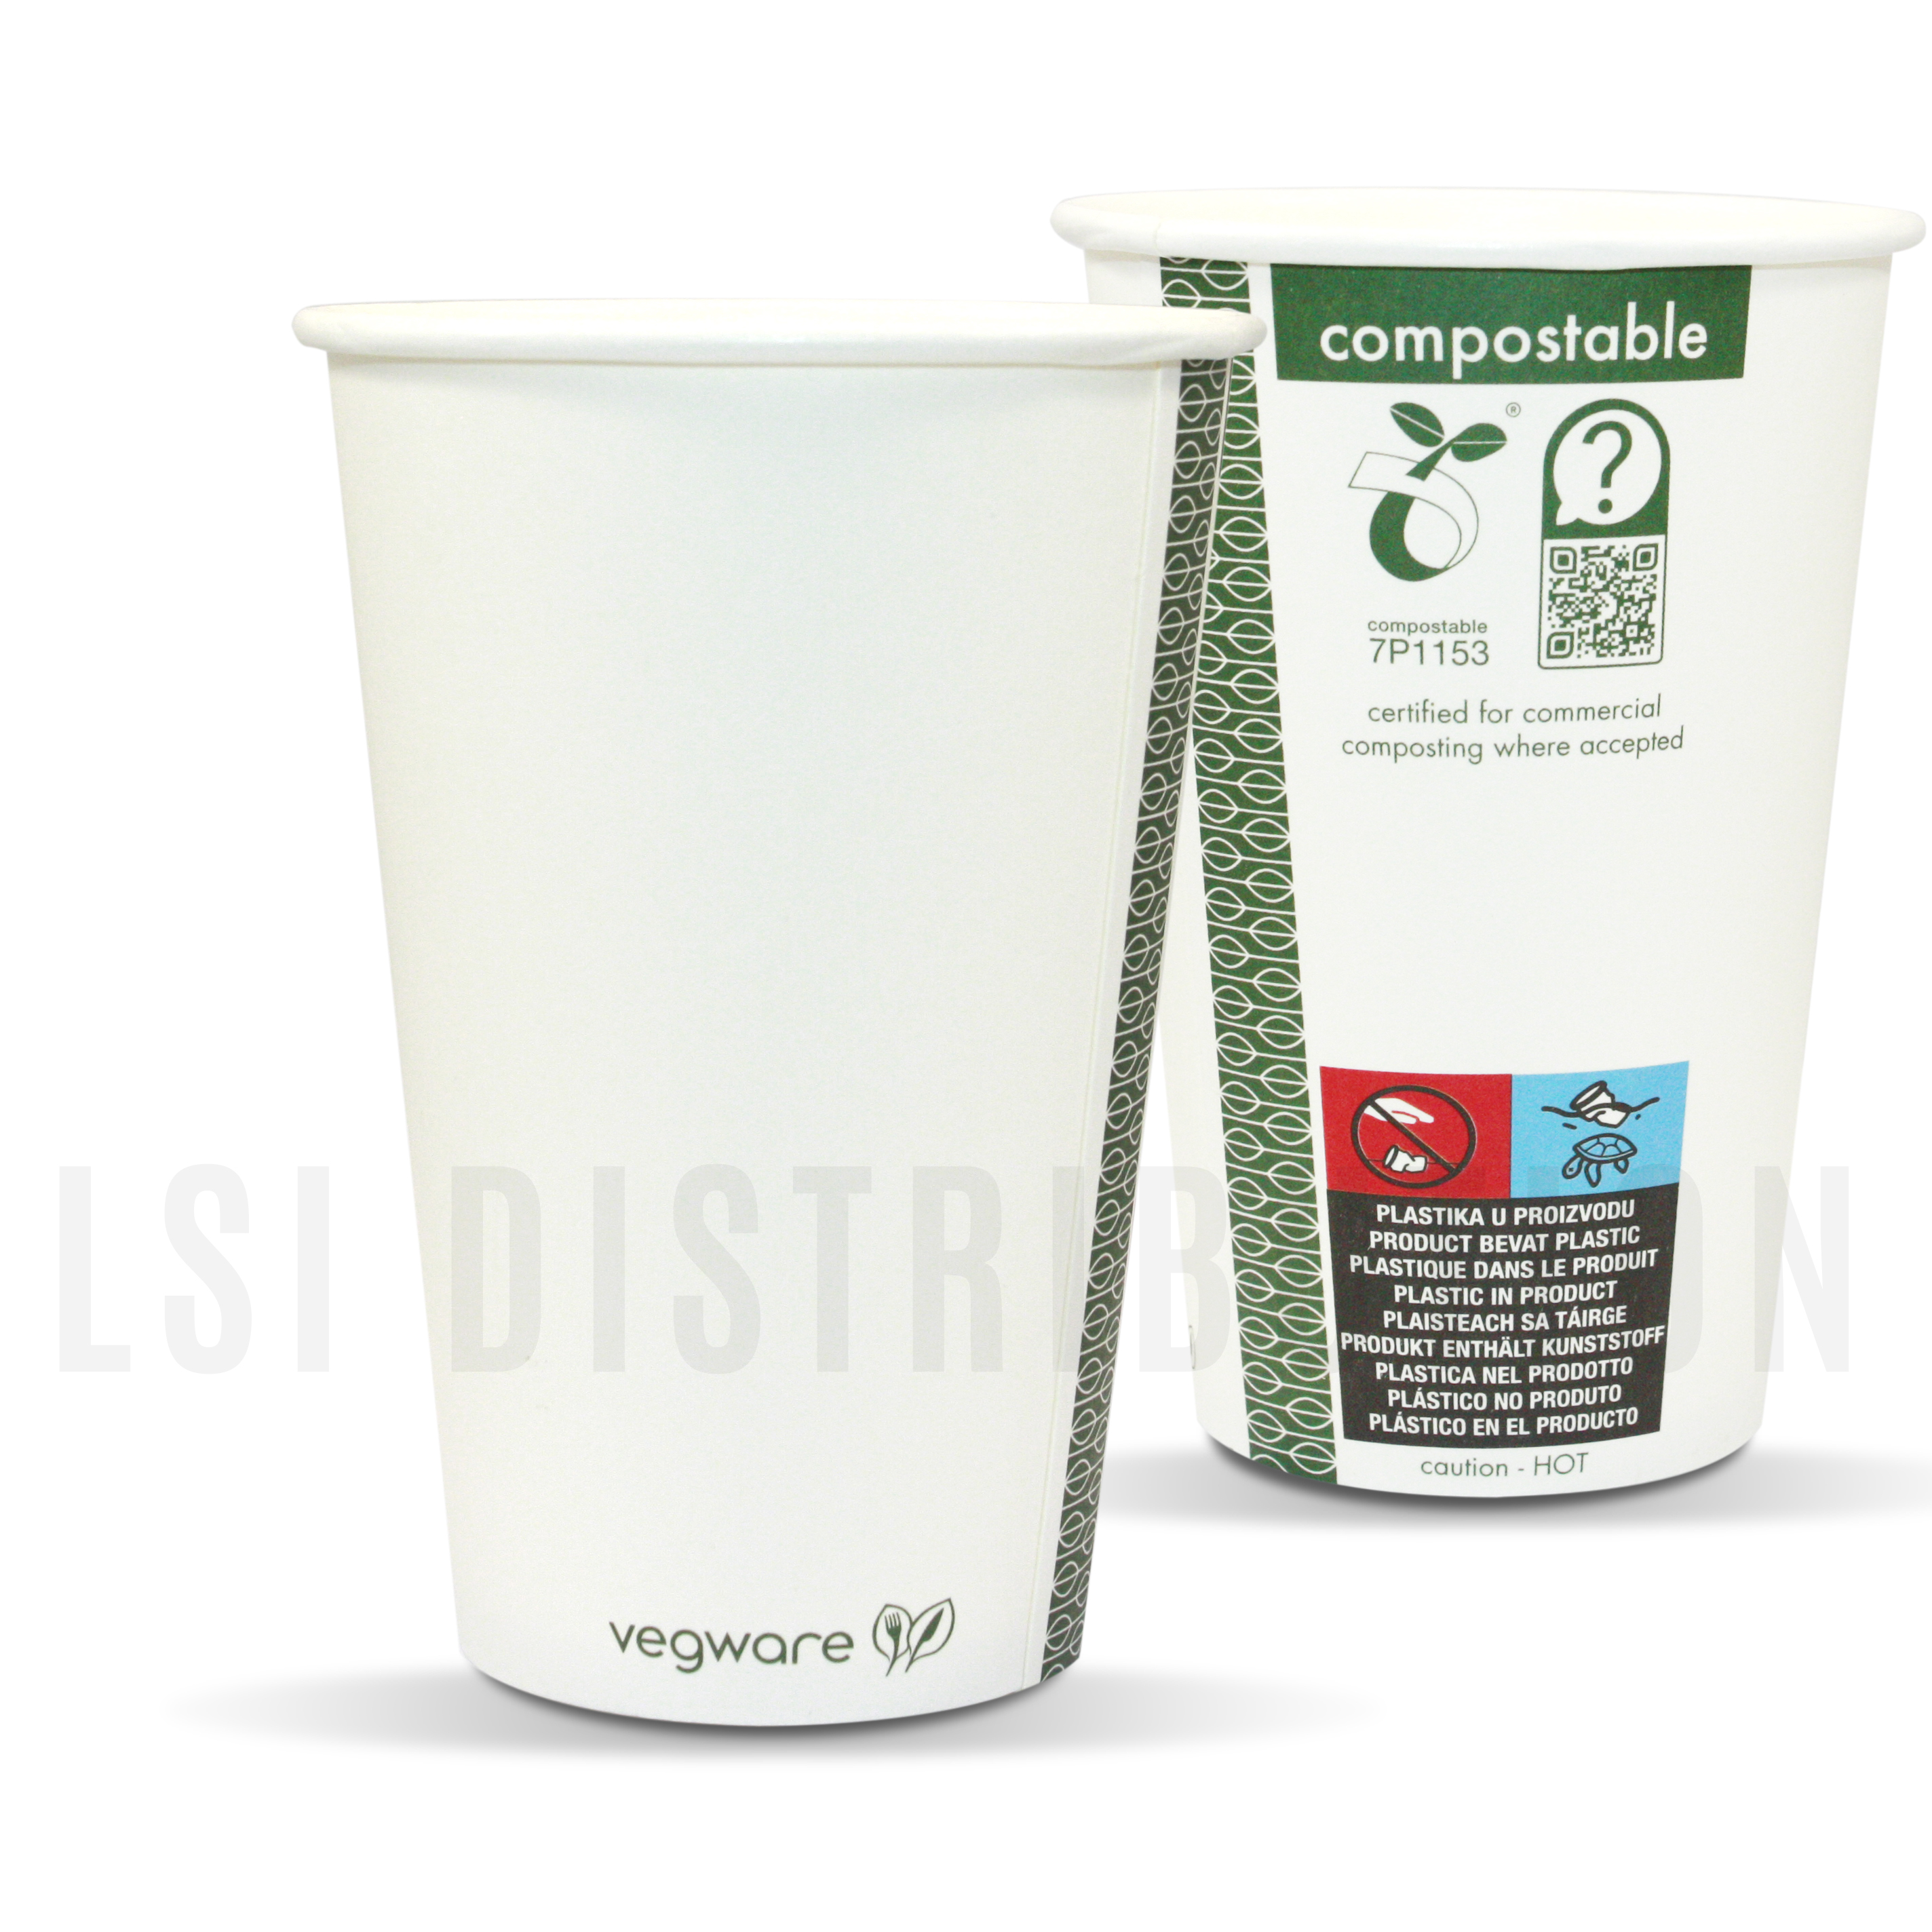 CARTON: Gobelet carton biodégradable 180/200ml